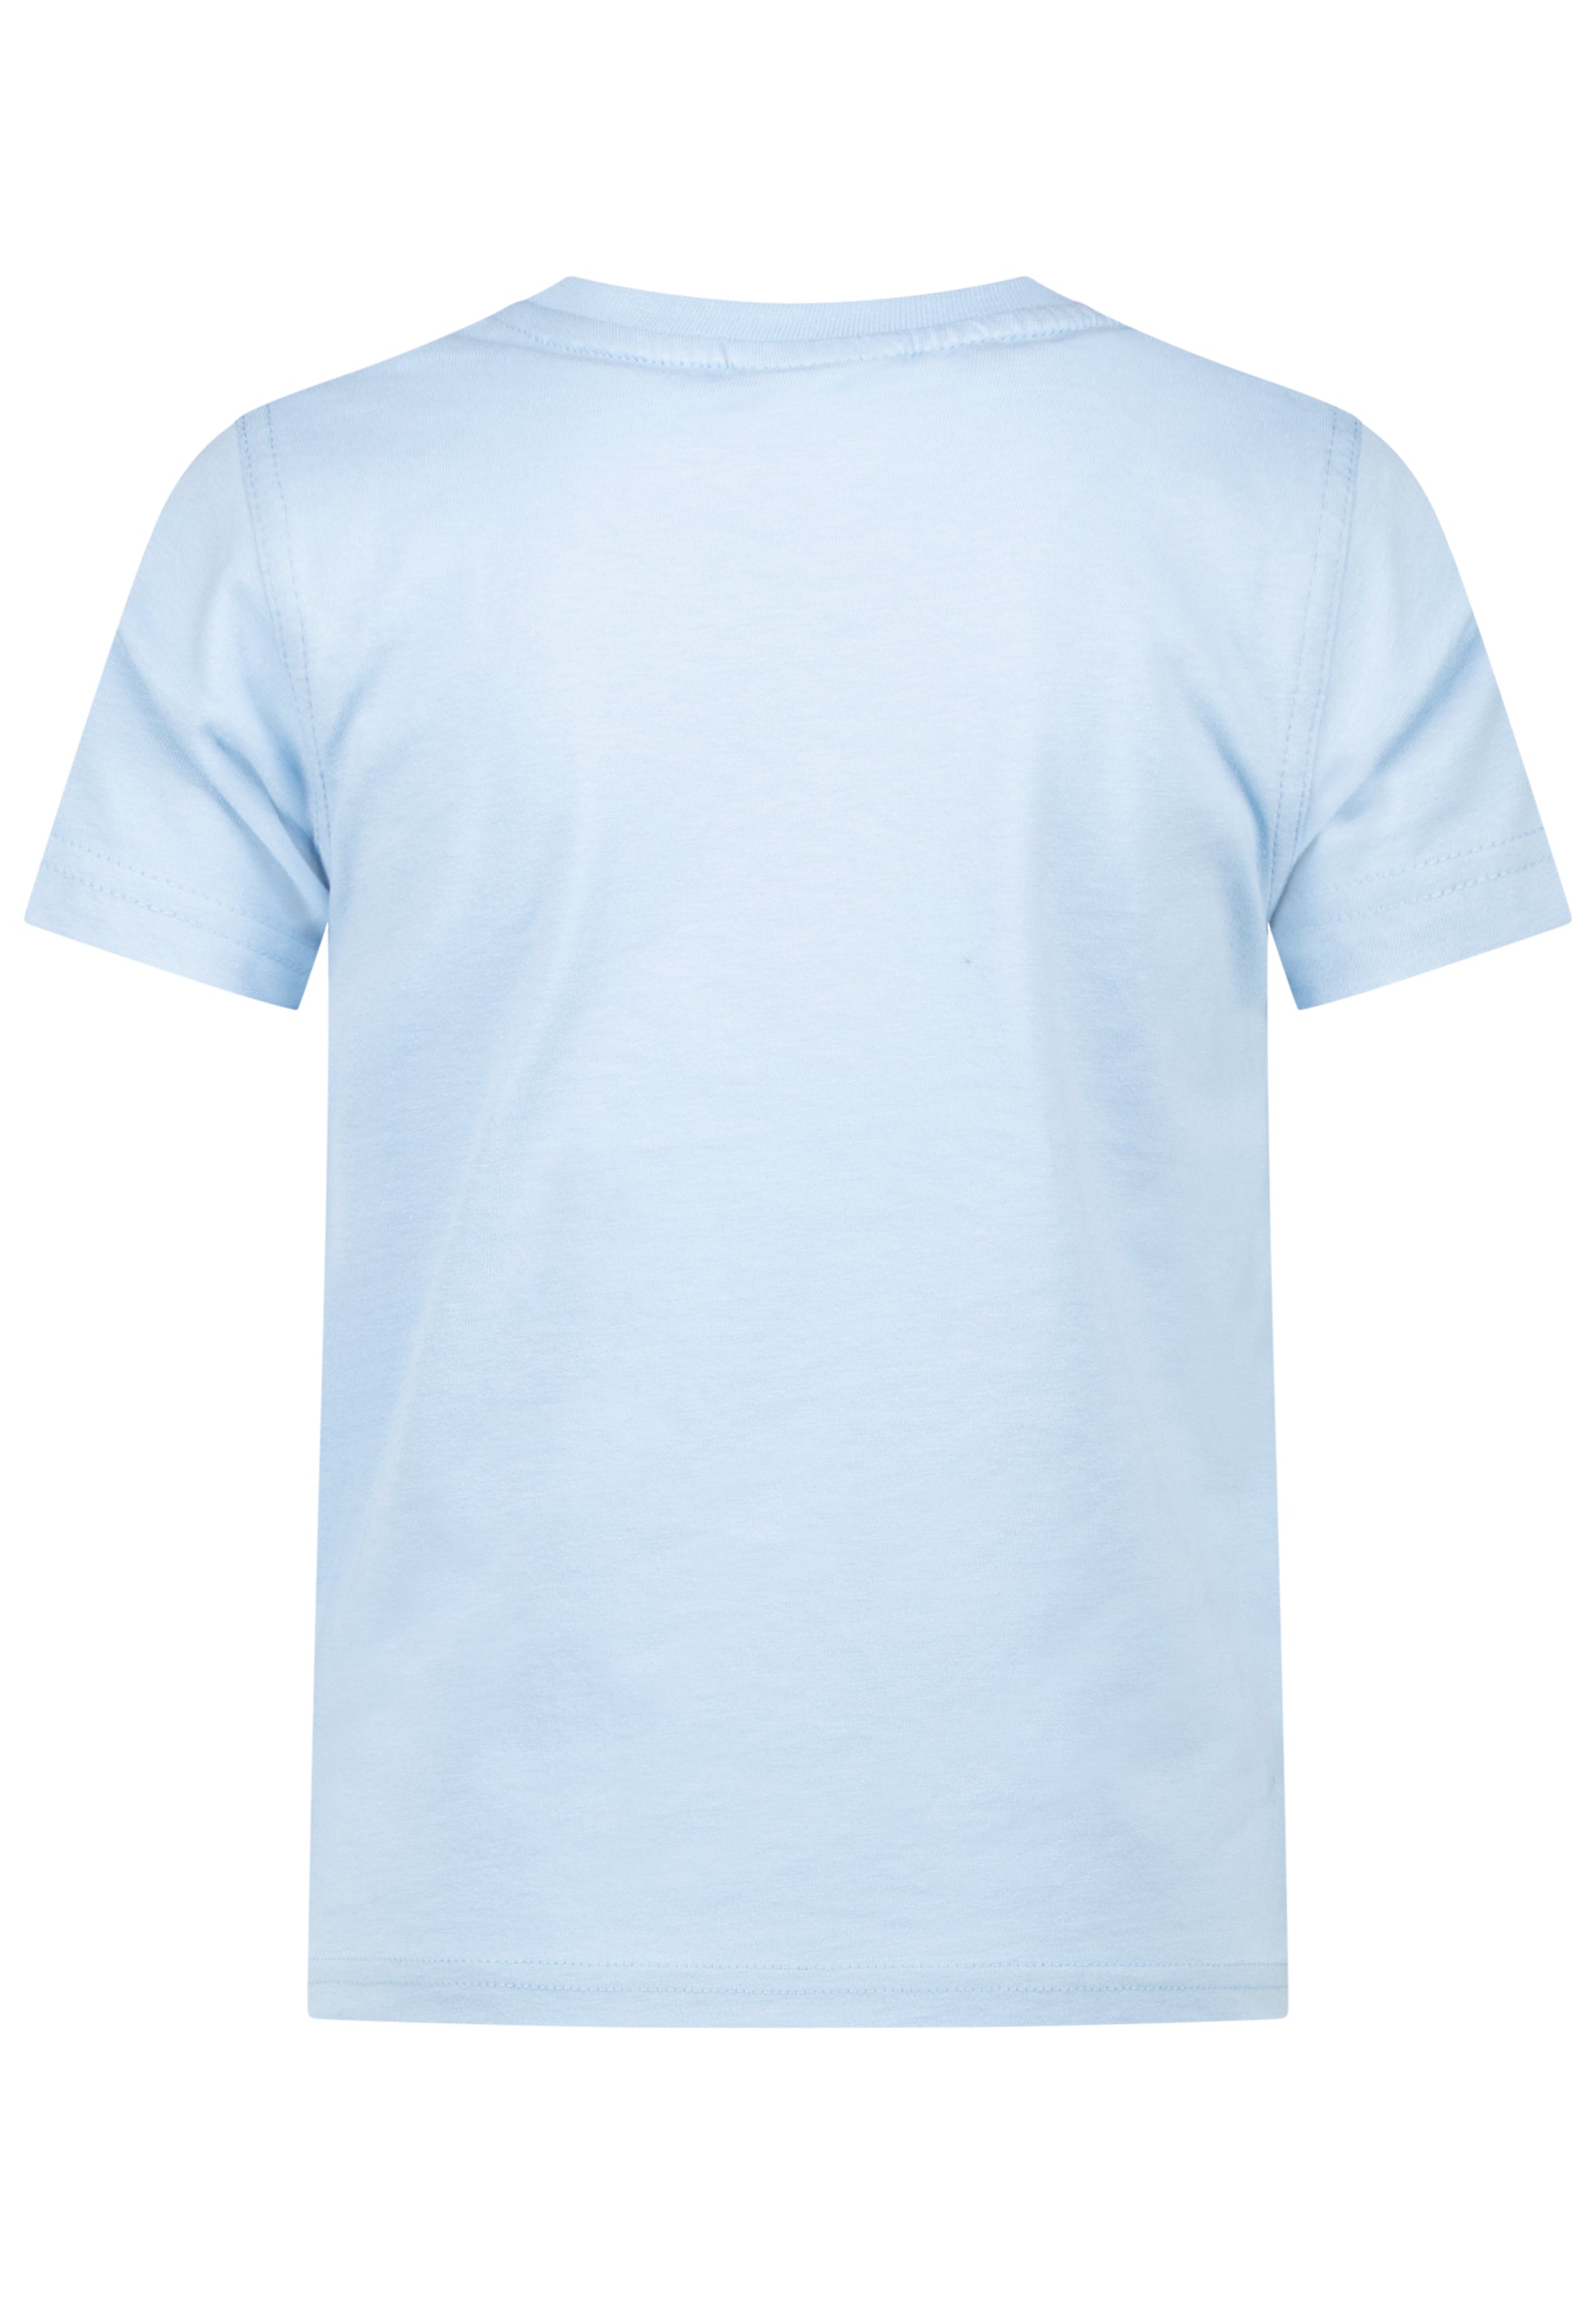 Salt & Pepper Jungen T-Shirt Feuerwehr Applikation 43112788